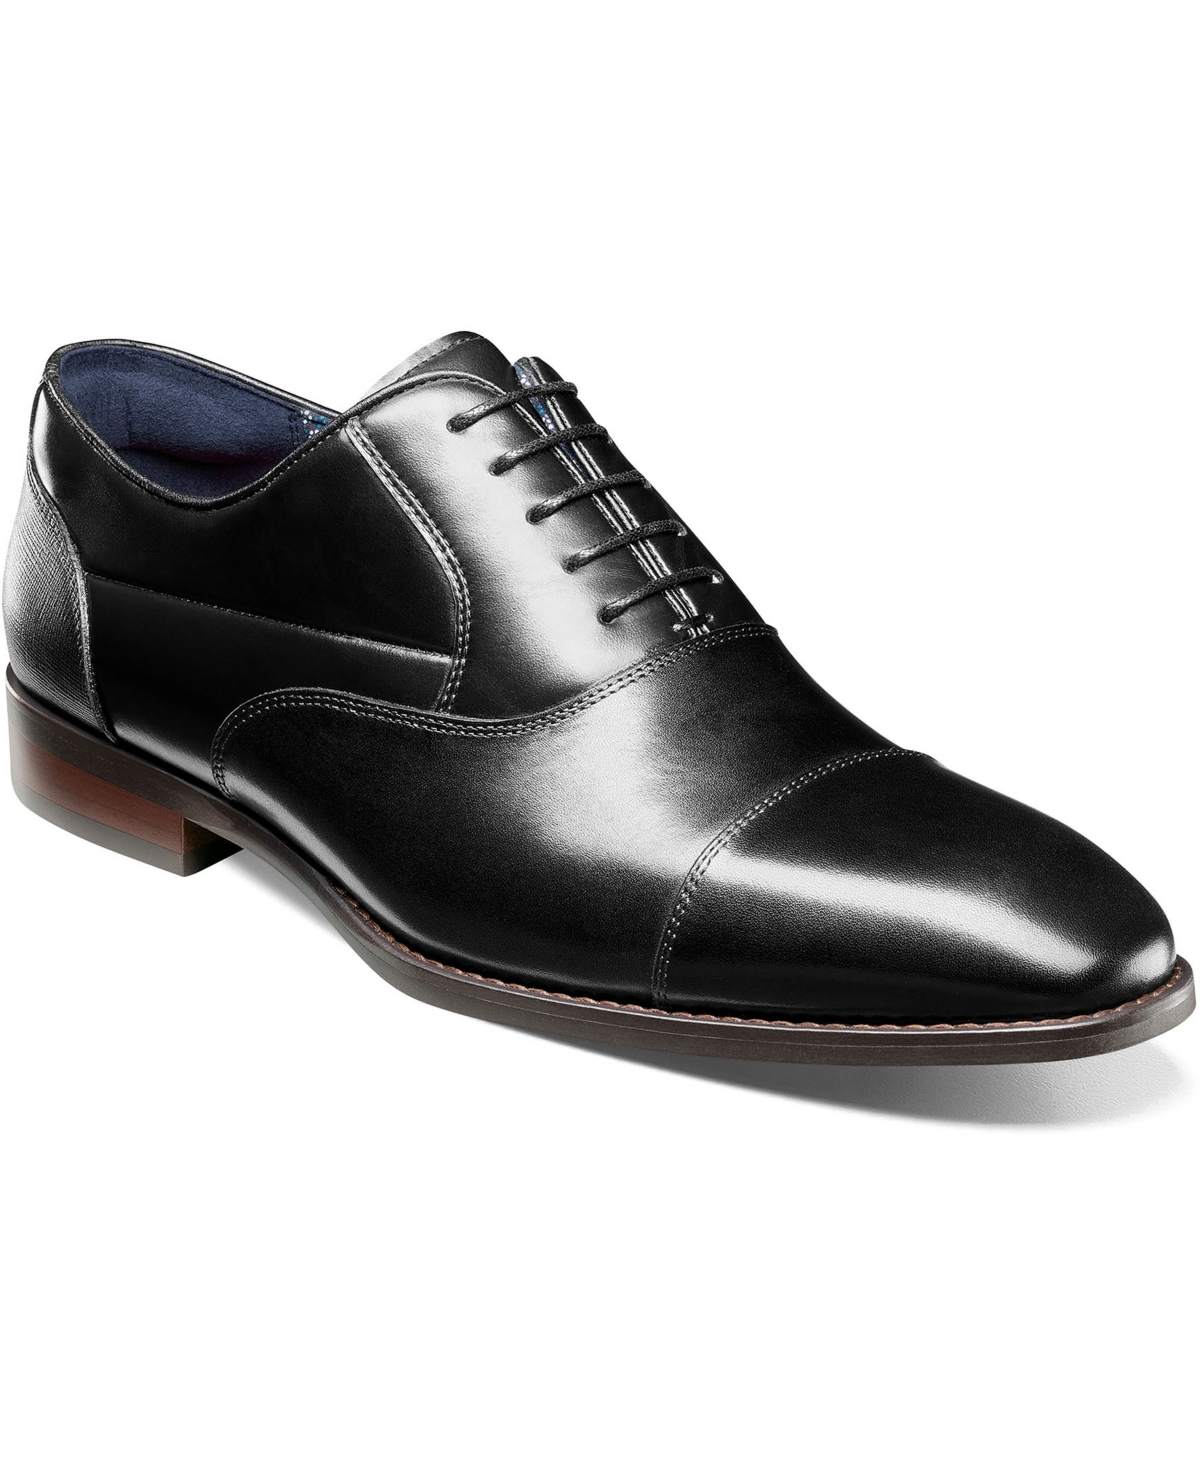 Men's Kallum Cap-Toe Oxford Dress Shoe - Navy